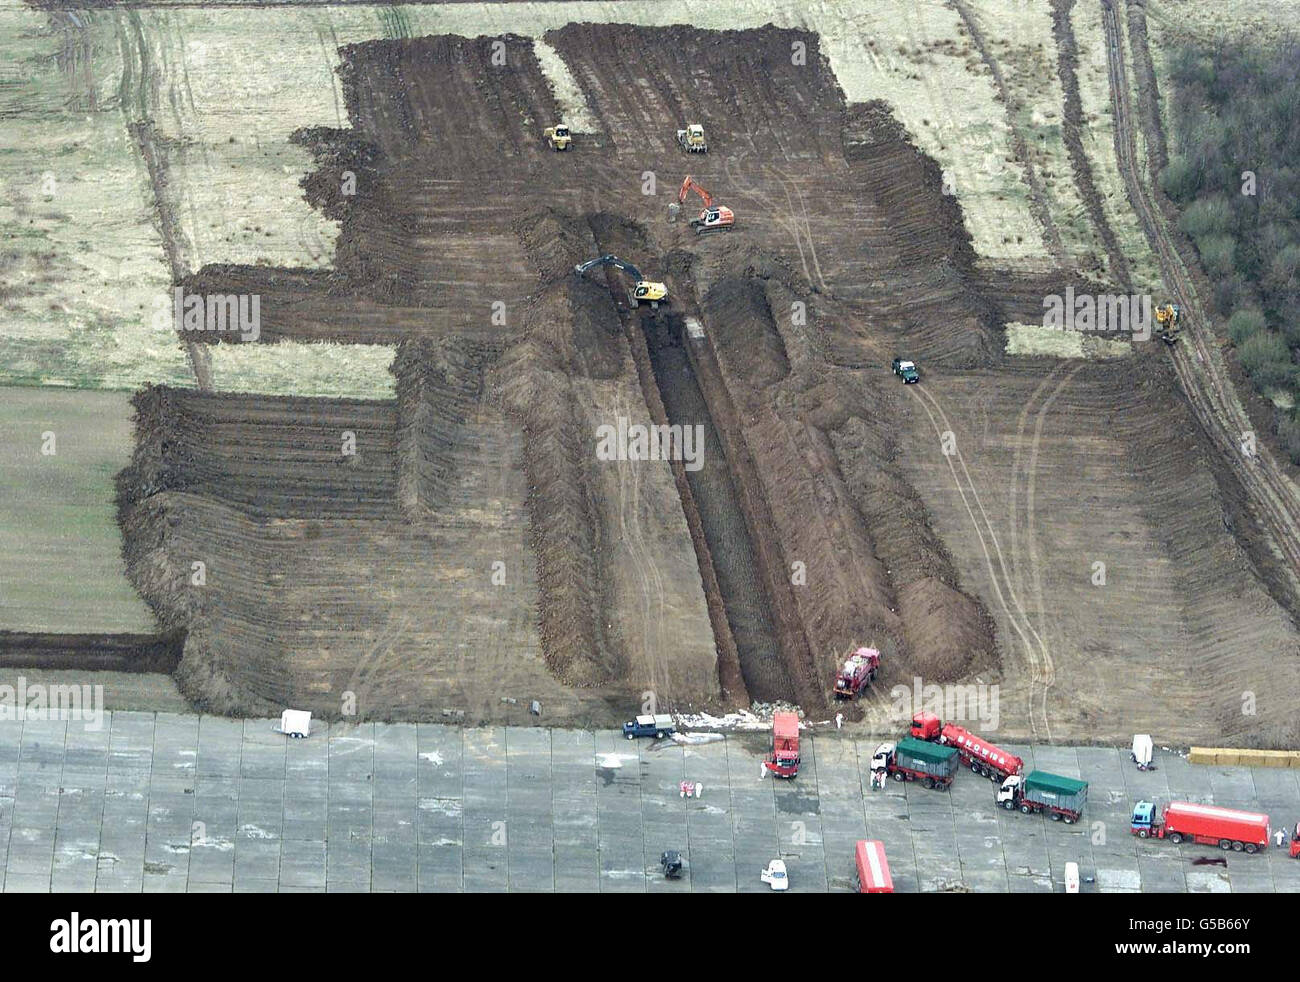 Die Deponierung von Schafen und Rindern beginnt an einer riesigen Grabstätte auf einem stillliegenden Flugplatz bei Great Orton in Cumbria, wo ein Graben ausgegraben wurde, um 500,000 Opfer der Maul- und Klauenseuche zu entsorgen. Stockfoto